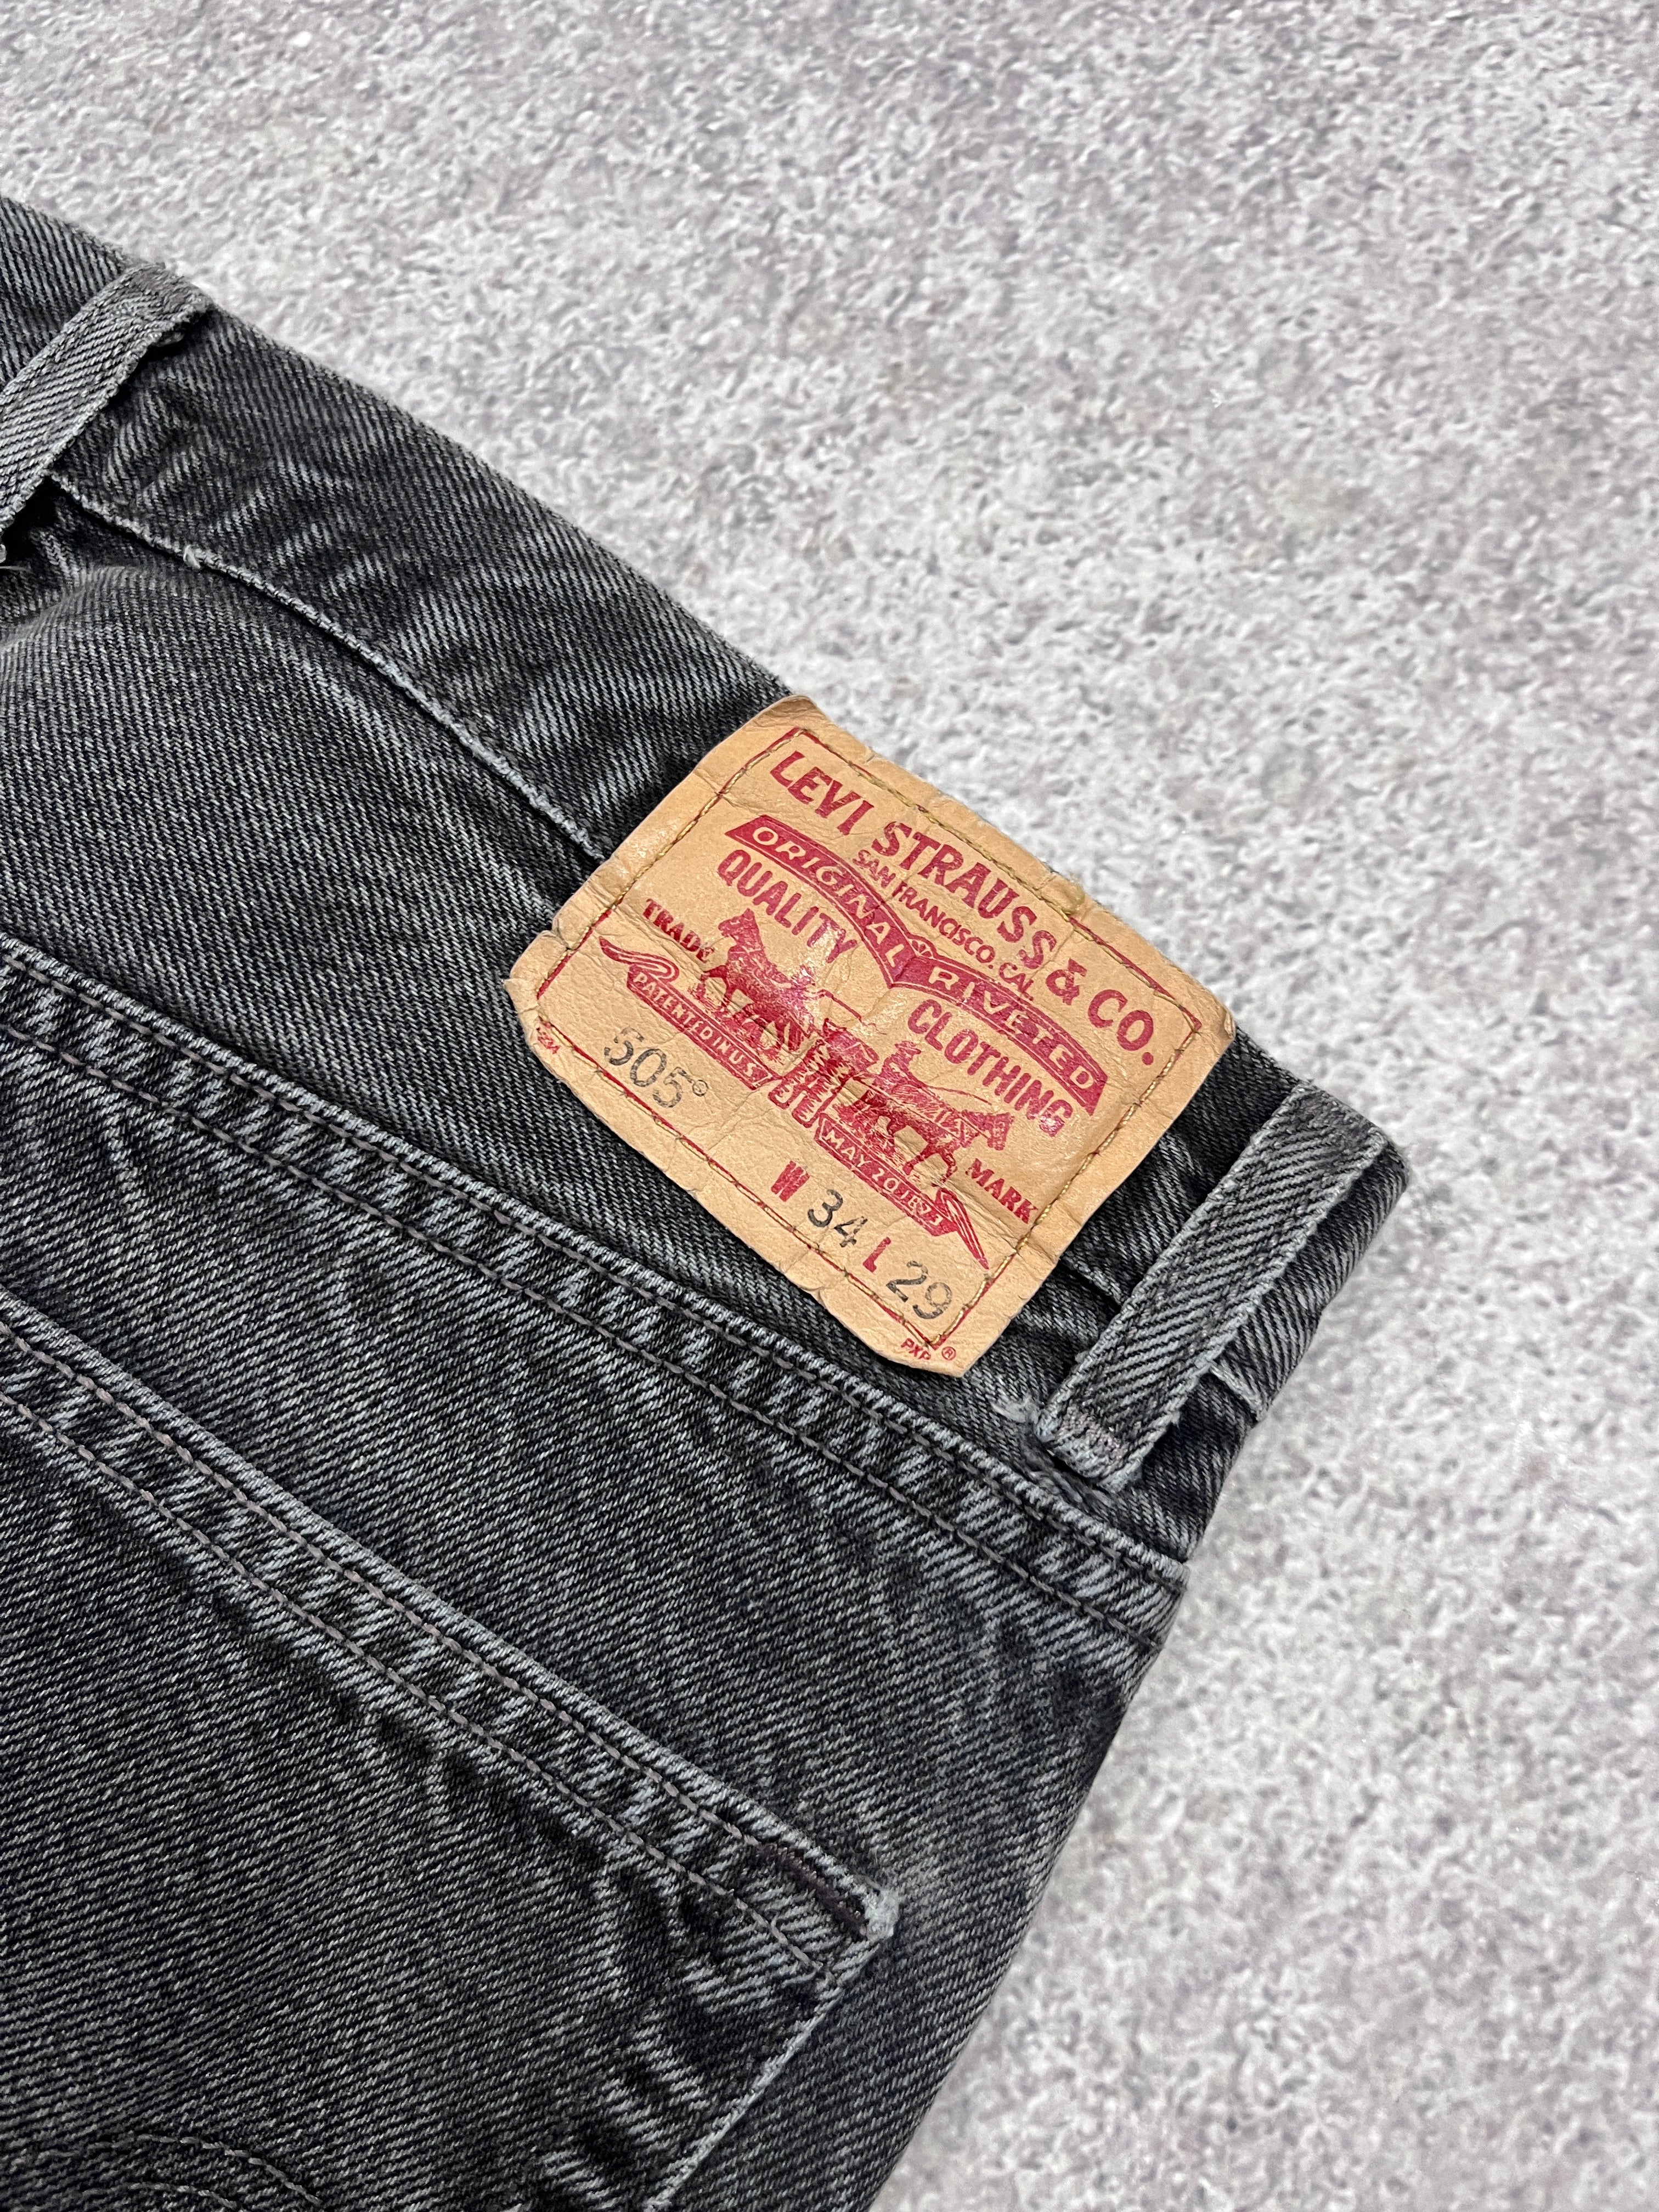 Vintage Levi 505 Denim Jeans // W34 L29 - RHAGHOUSE VINTAGE